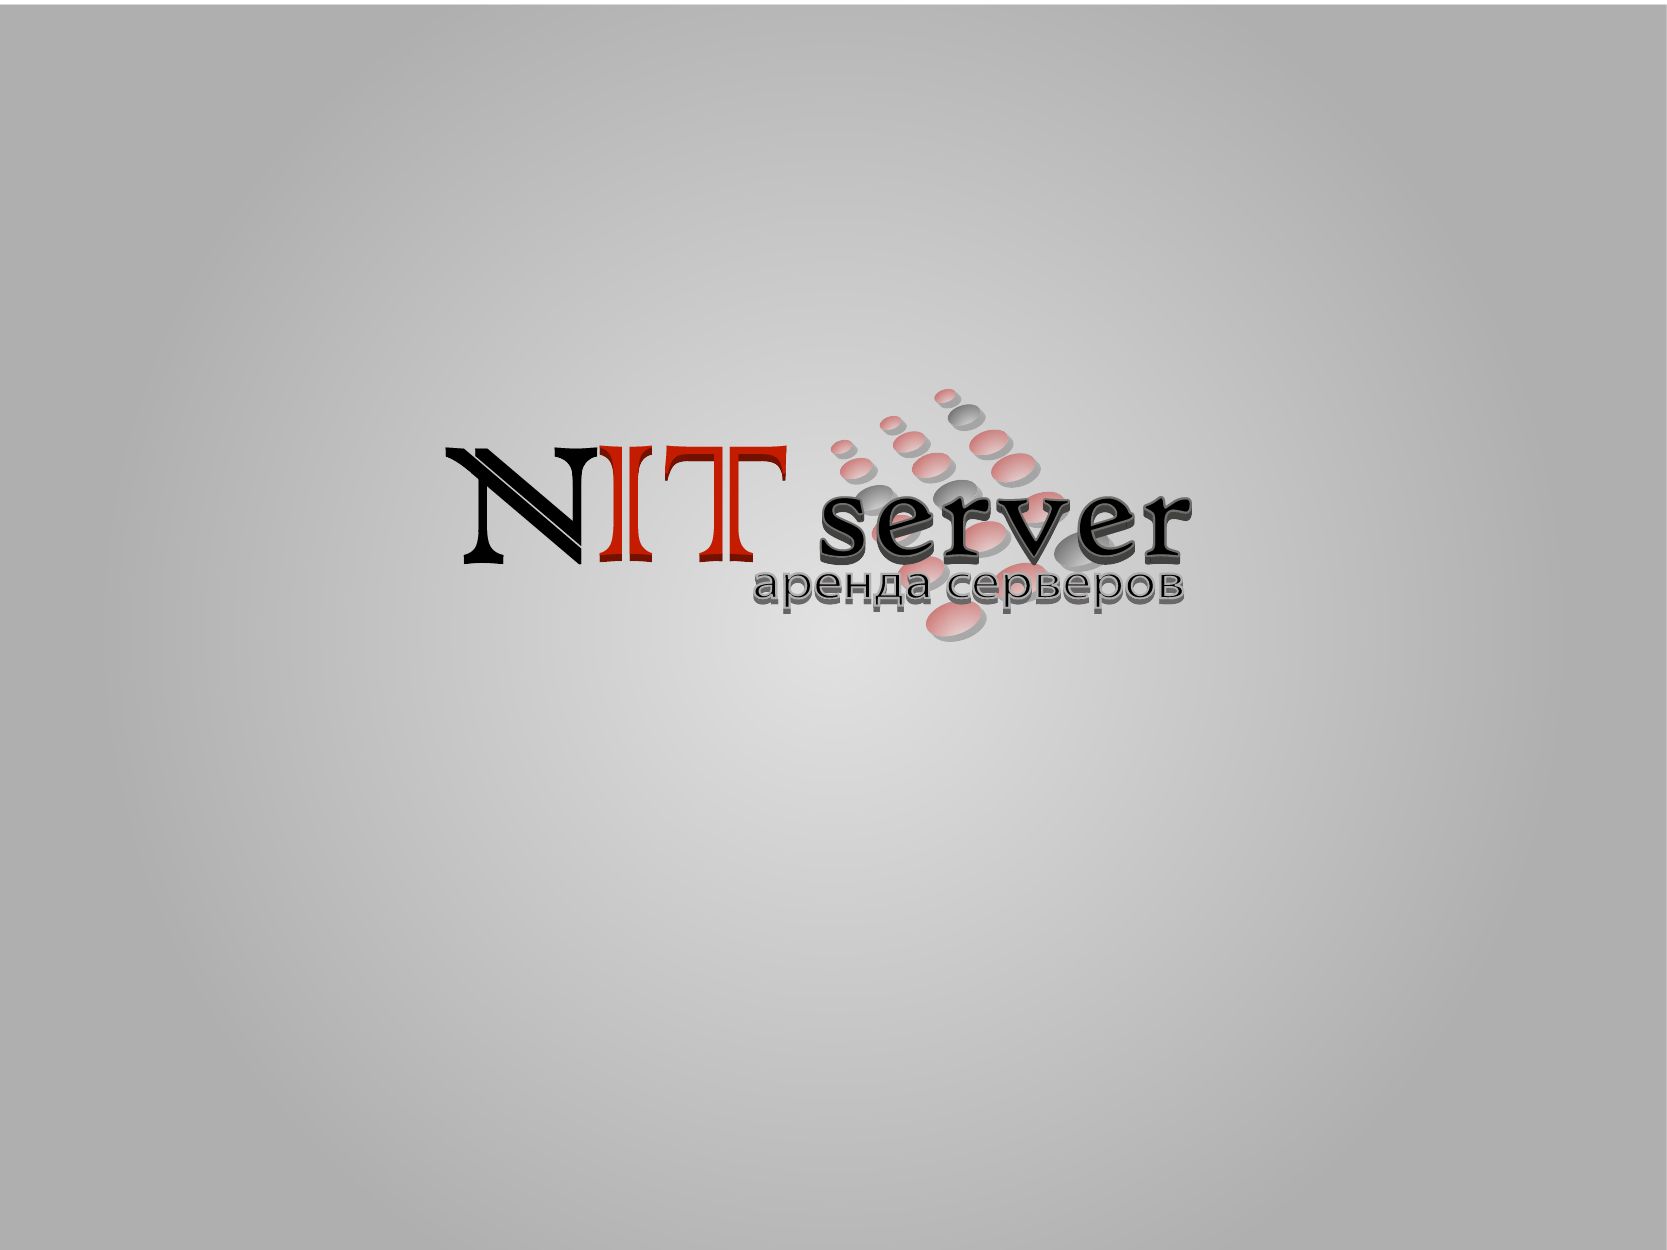 Логотип компании NITserver - аренда серверов - дизайнер areghar